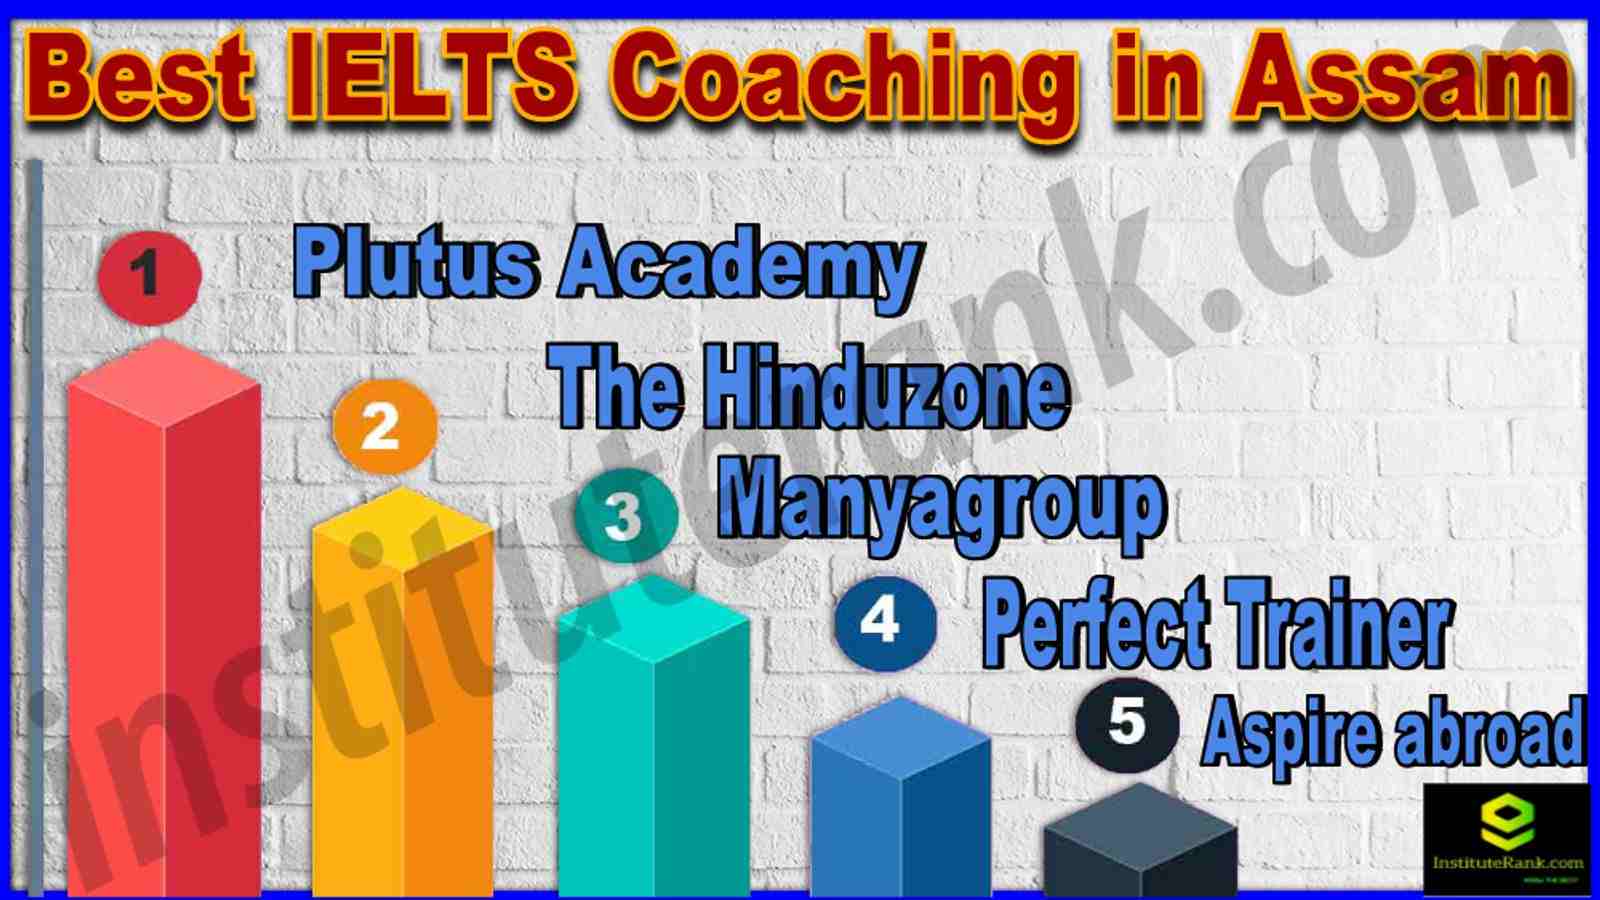 Best IELTS Coaching in Assam